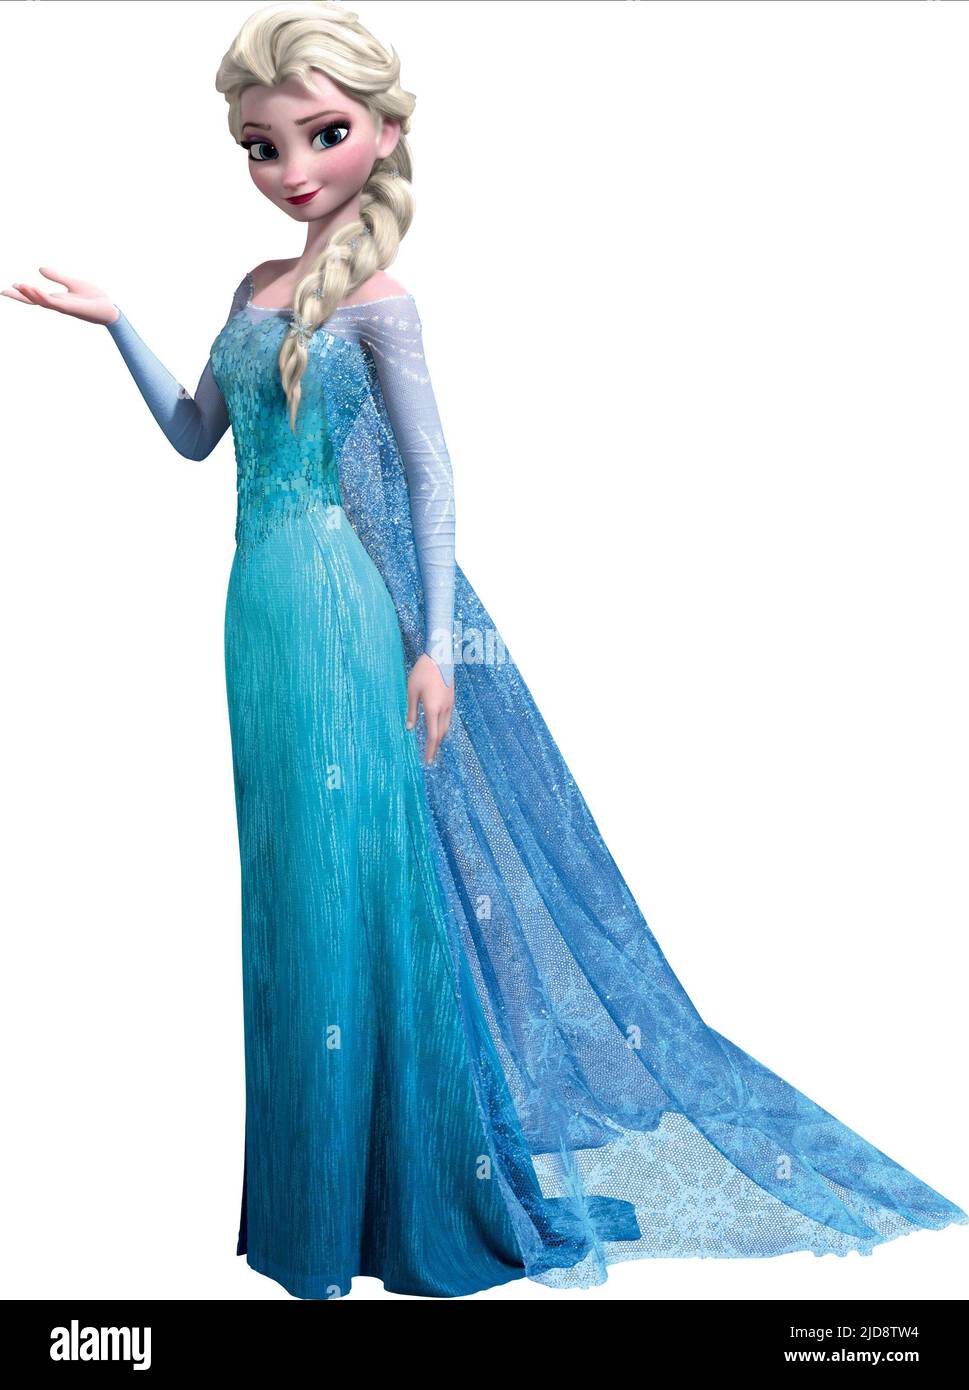 Stunning Elsa Images – Over 999 Top Picks in Full 4K Resolution